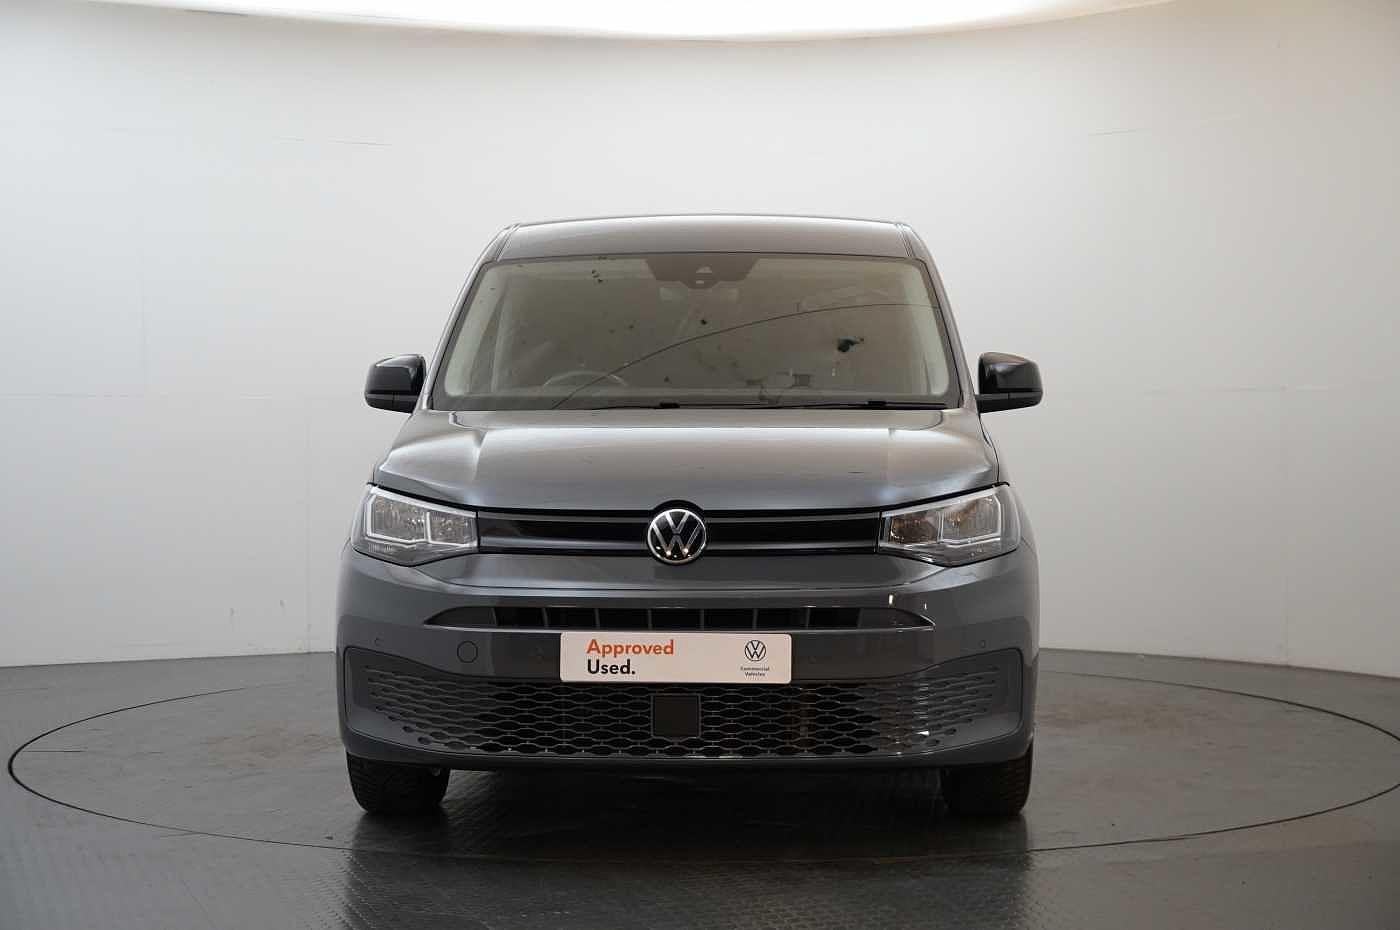 Volkswagen Caddy for sale from Western Volkswagen Van Centre